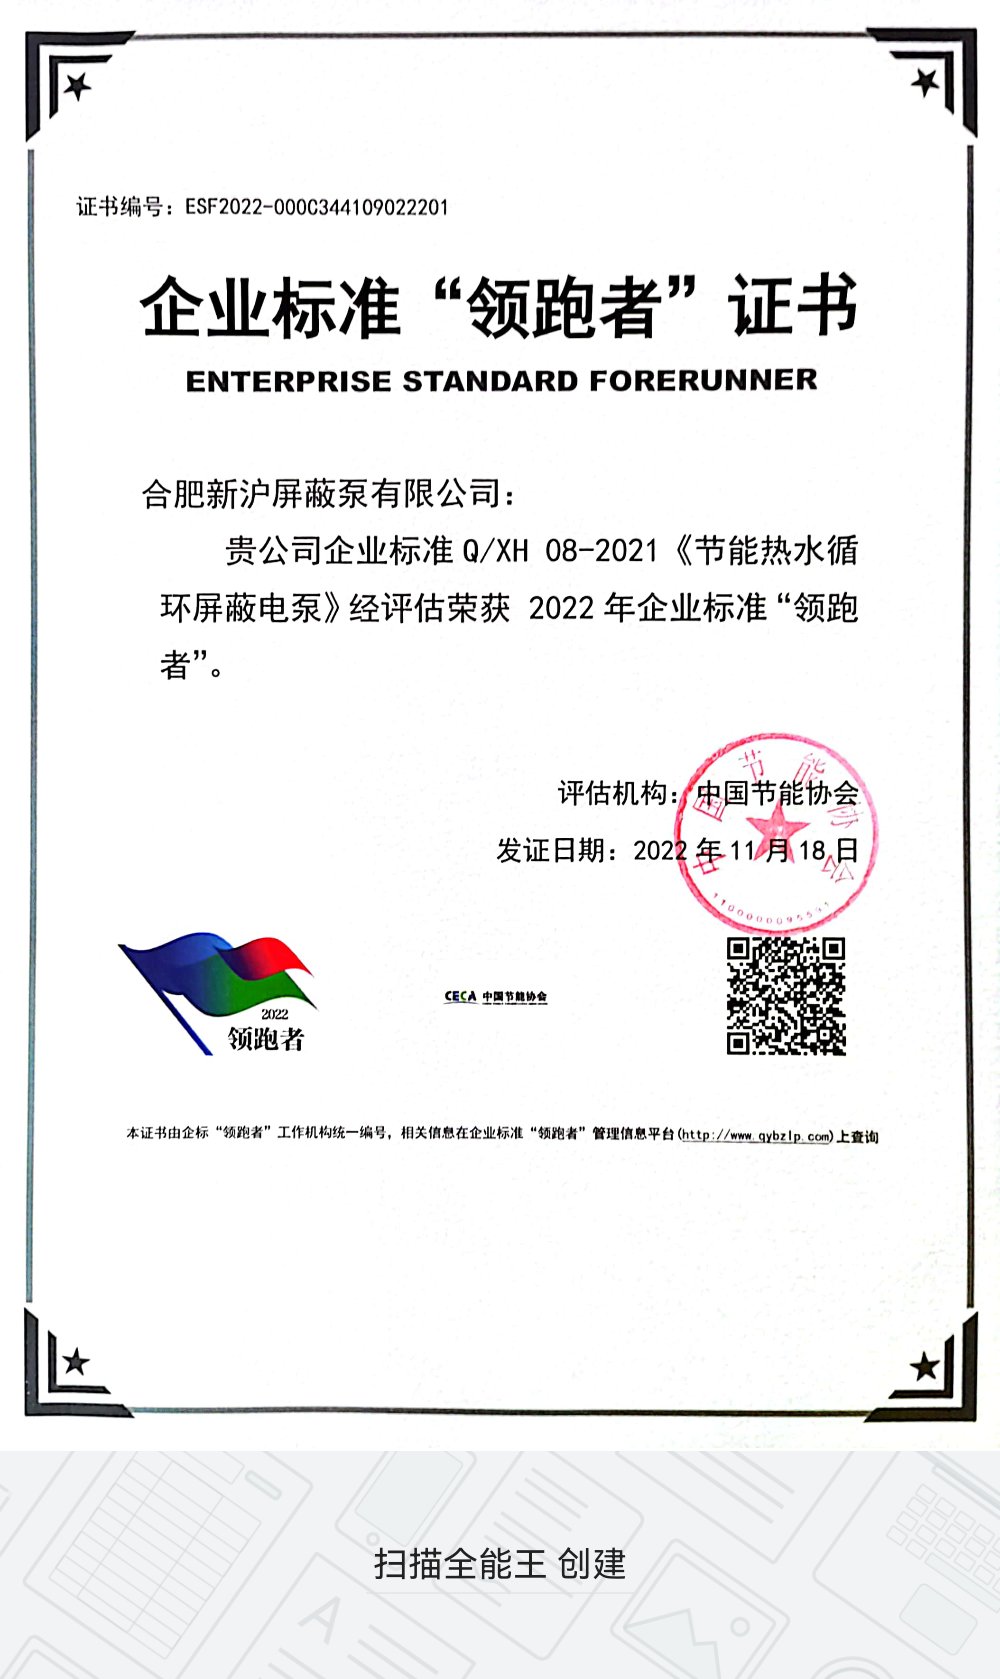 El Enterprise Standard de Shinhoo fue seleccionado en la lista de “precursores” en 2021
    